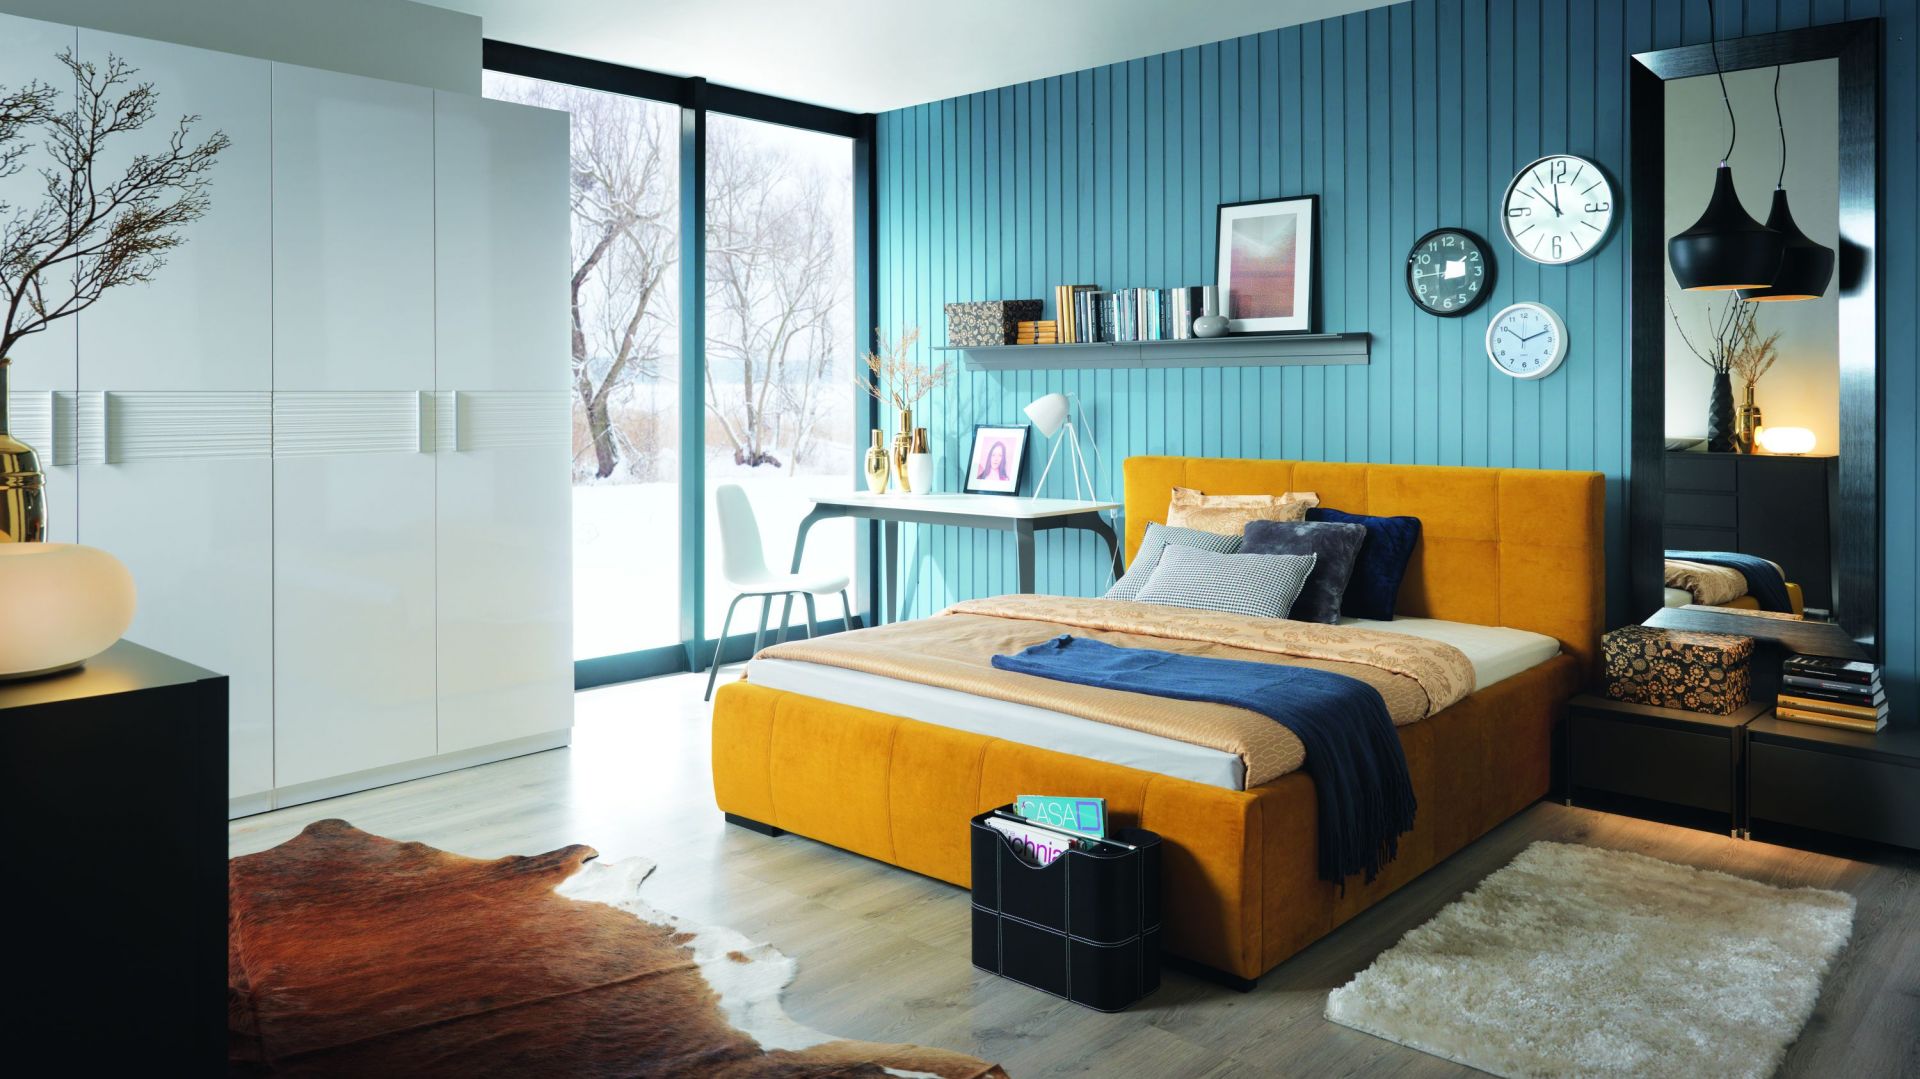 Nowoczesna sypialnia. Łóżka w wiosennych kolorach